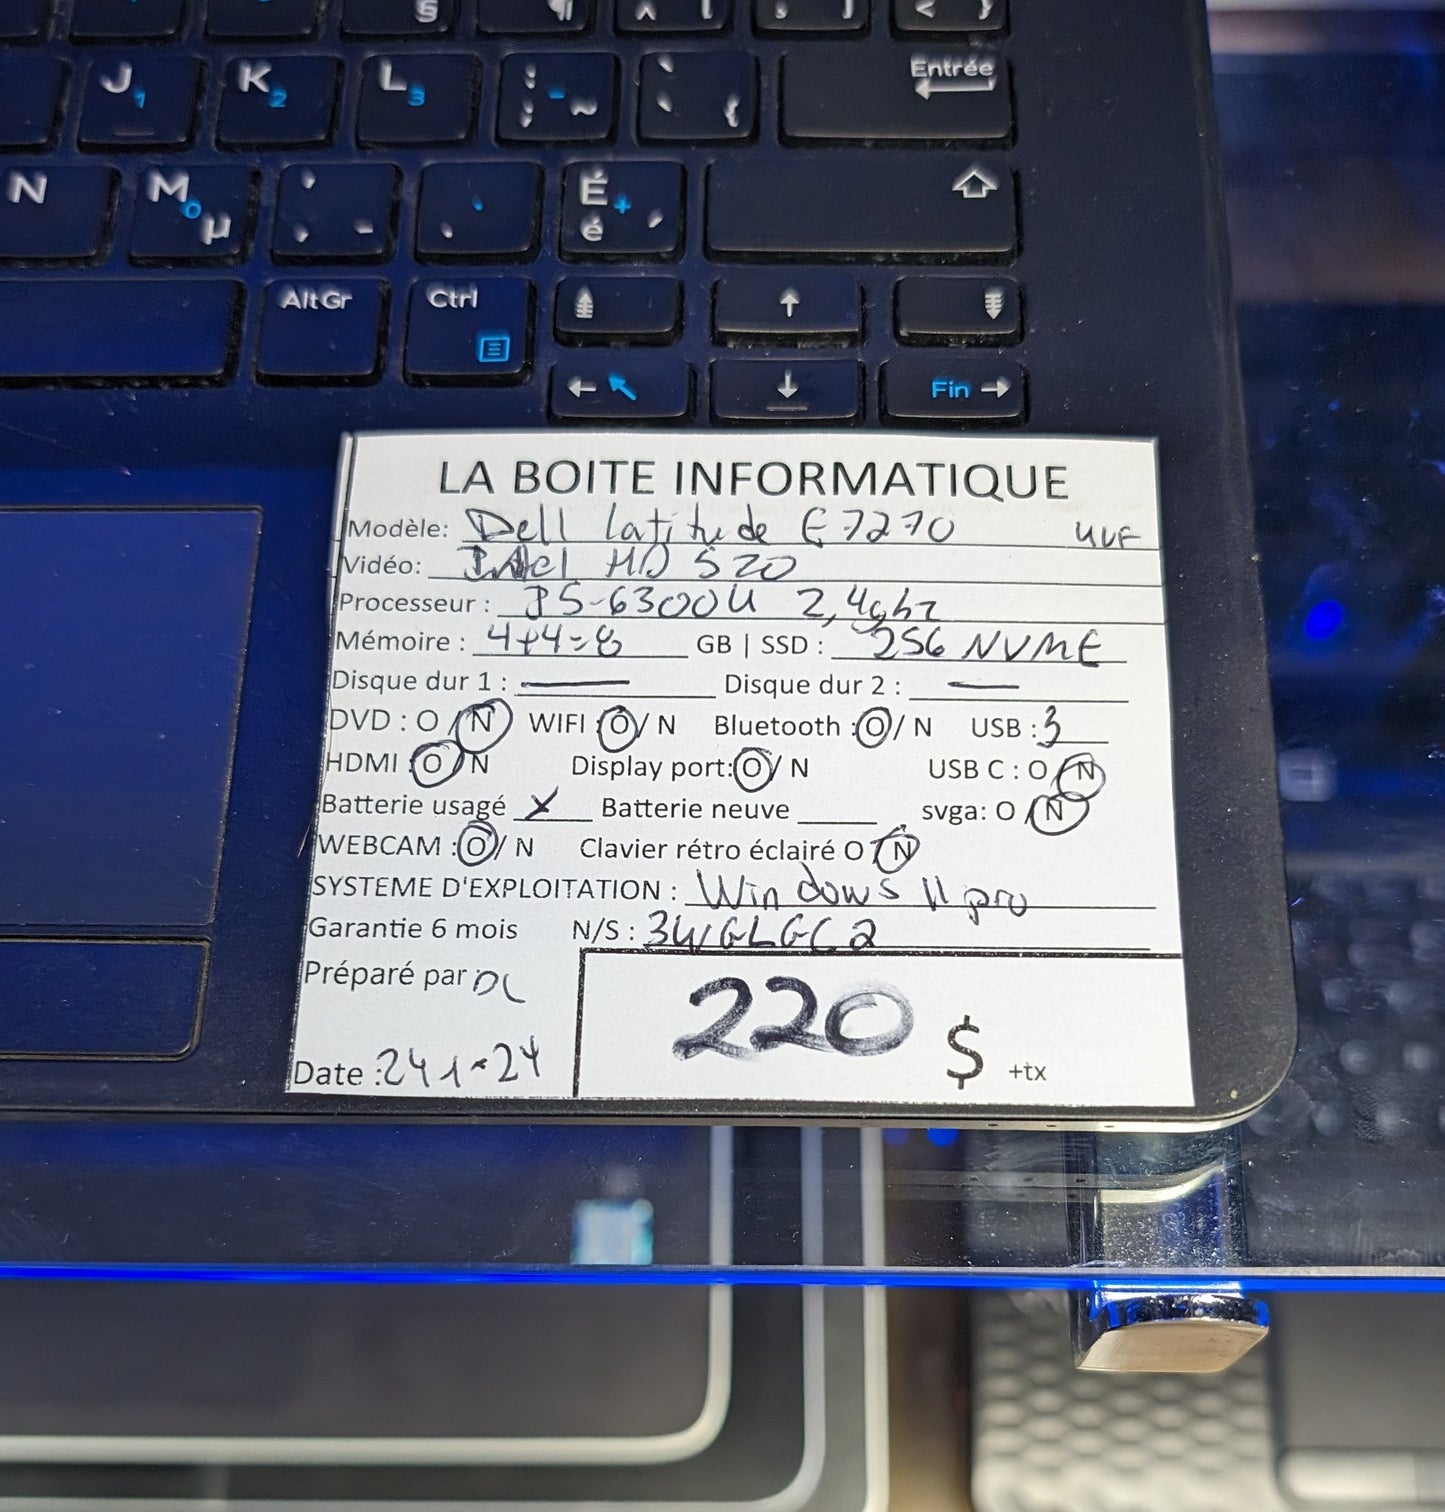 Laptop Dell Latitude E7270 i5-6300U 2,4GHz 8G0 256Go NVMe HDMI garantie 6 mois + tx